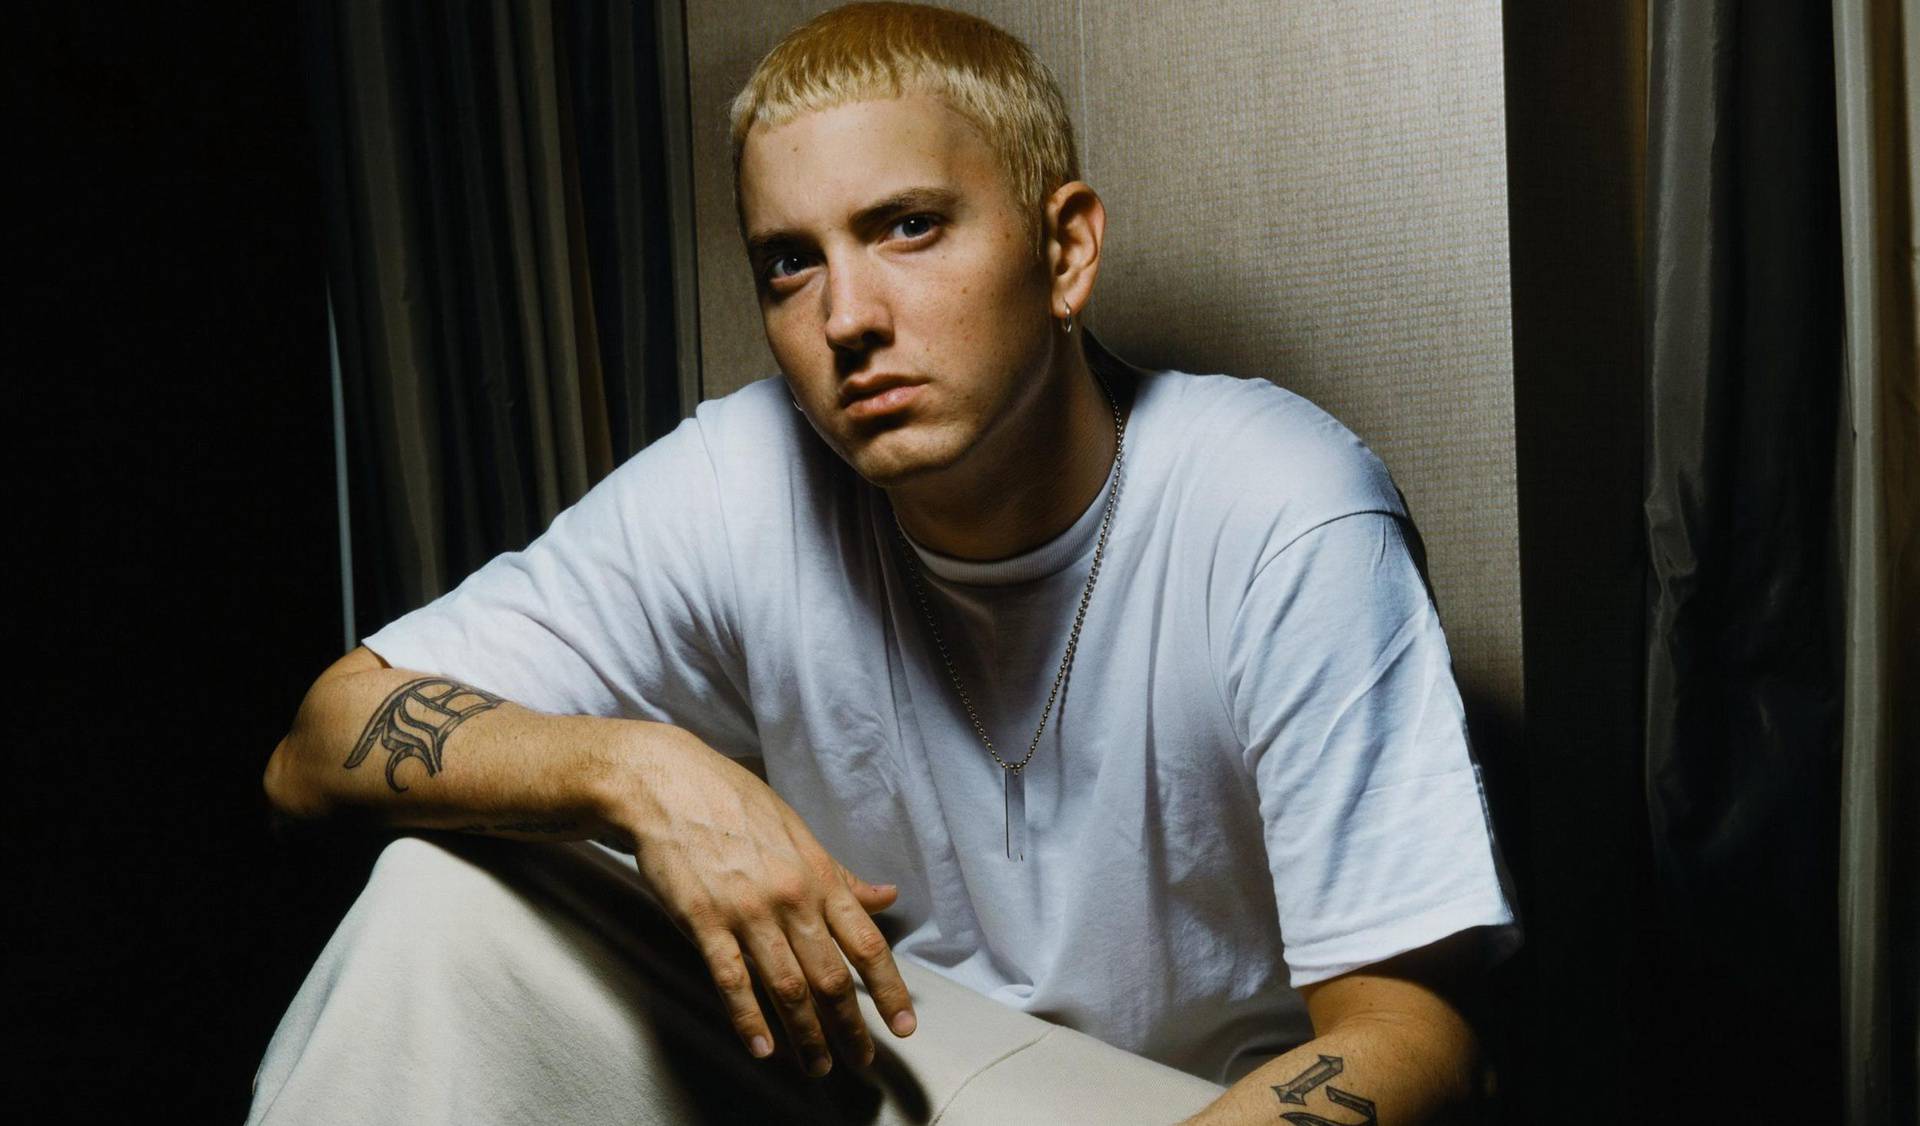 Udala se kći repera Eminema: Imala je devet godina kada ju je posvojio i spasio iz pakla droge